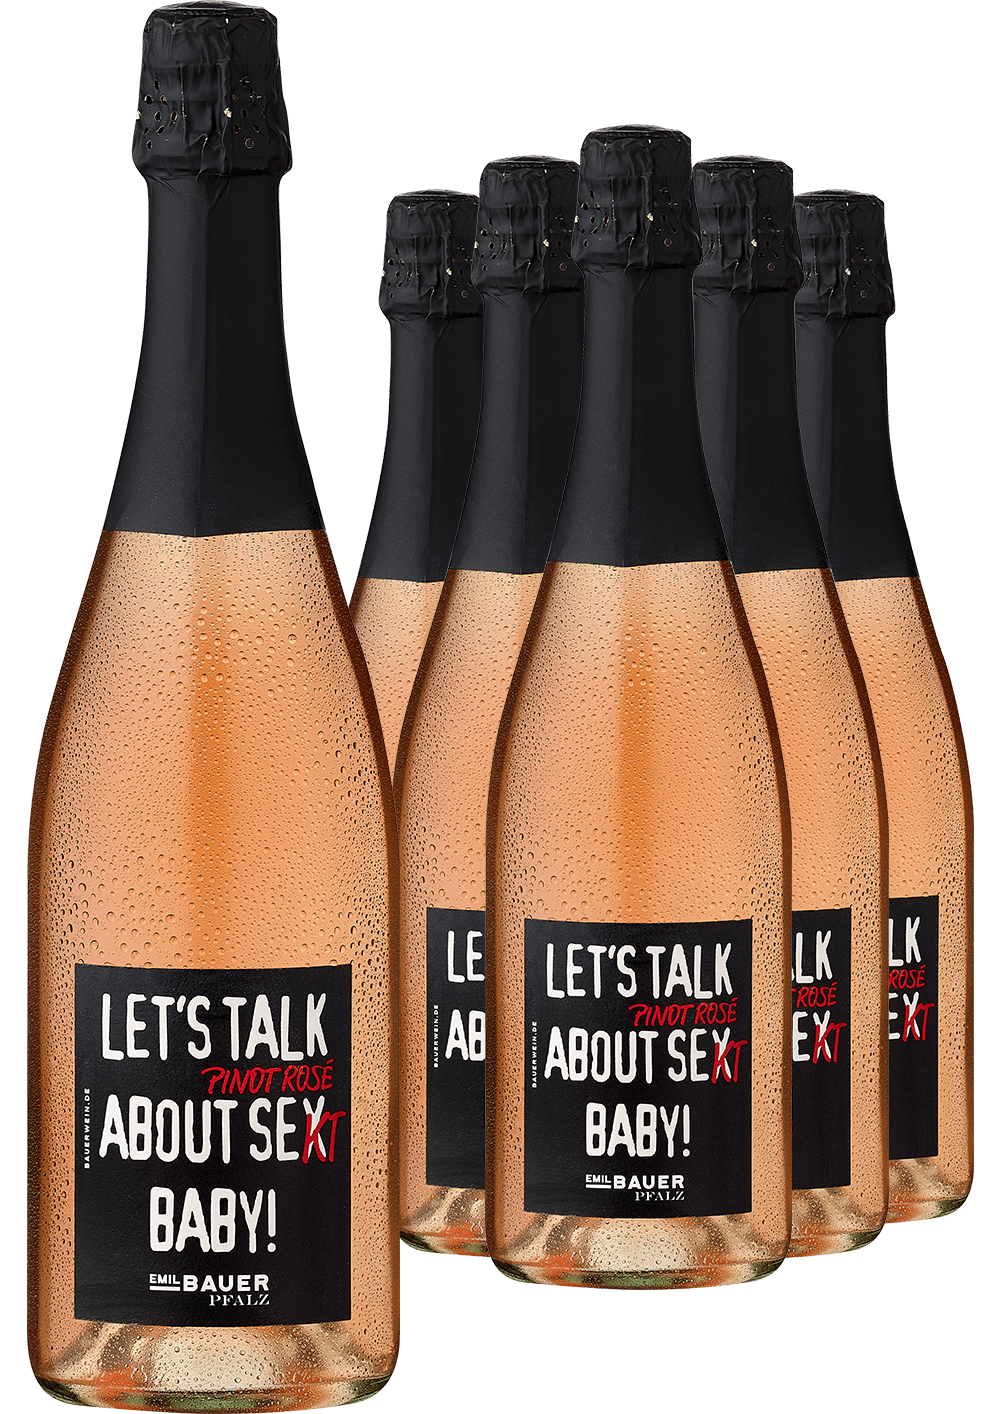 5+1-PAKET Emil Bauer »Let's talk about Pinot Rosé Se(x)kt Baby!« 2019 von Emil Bauer